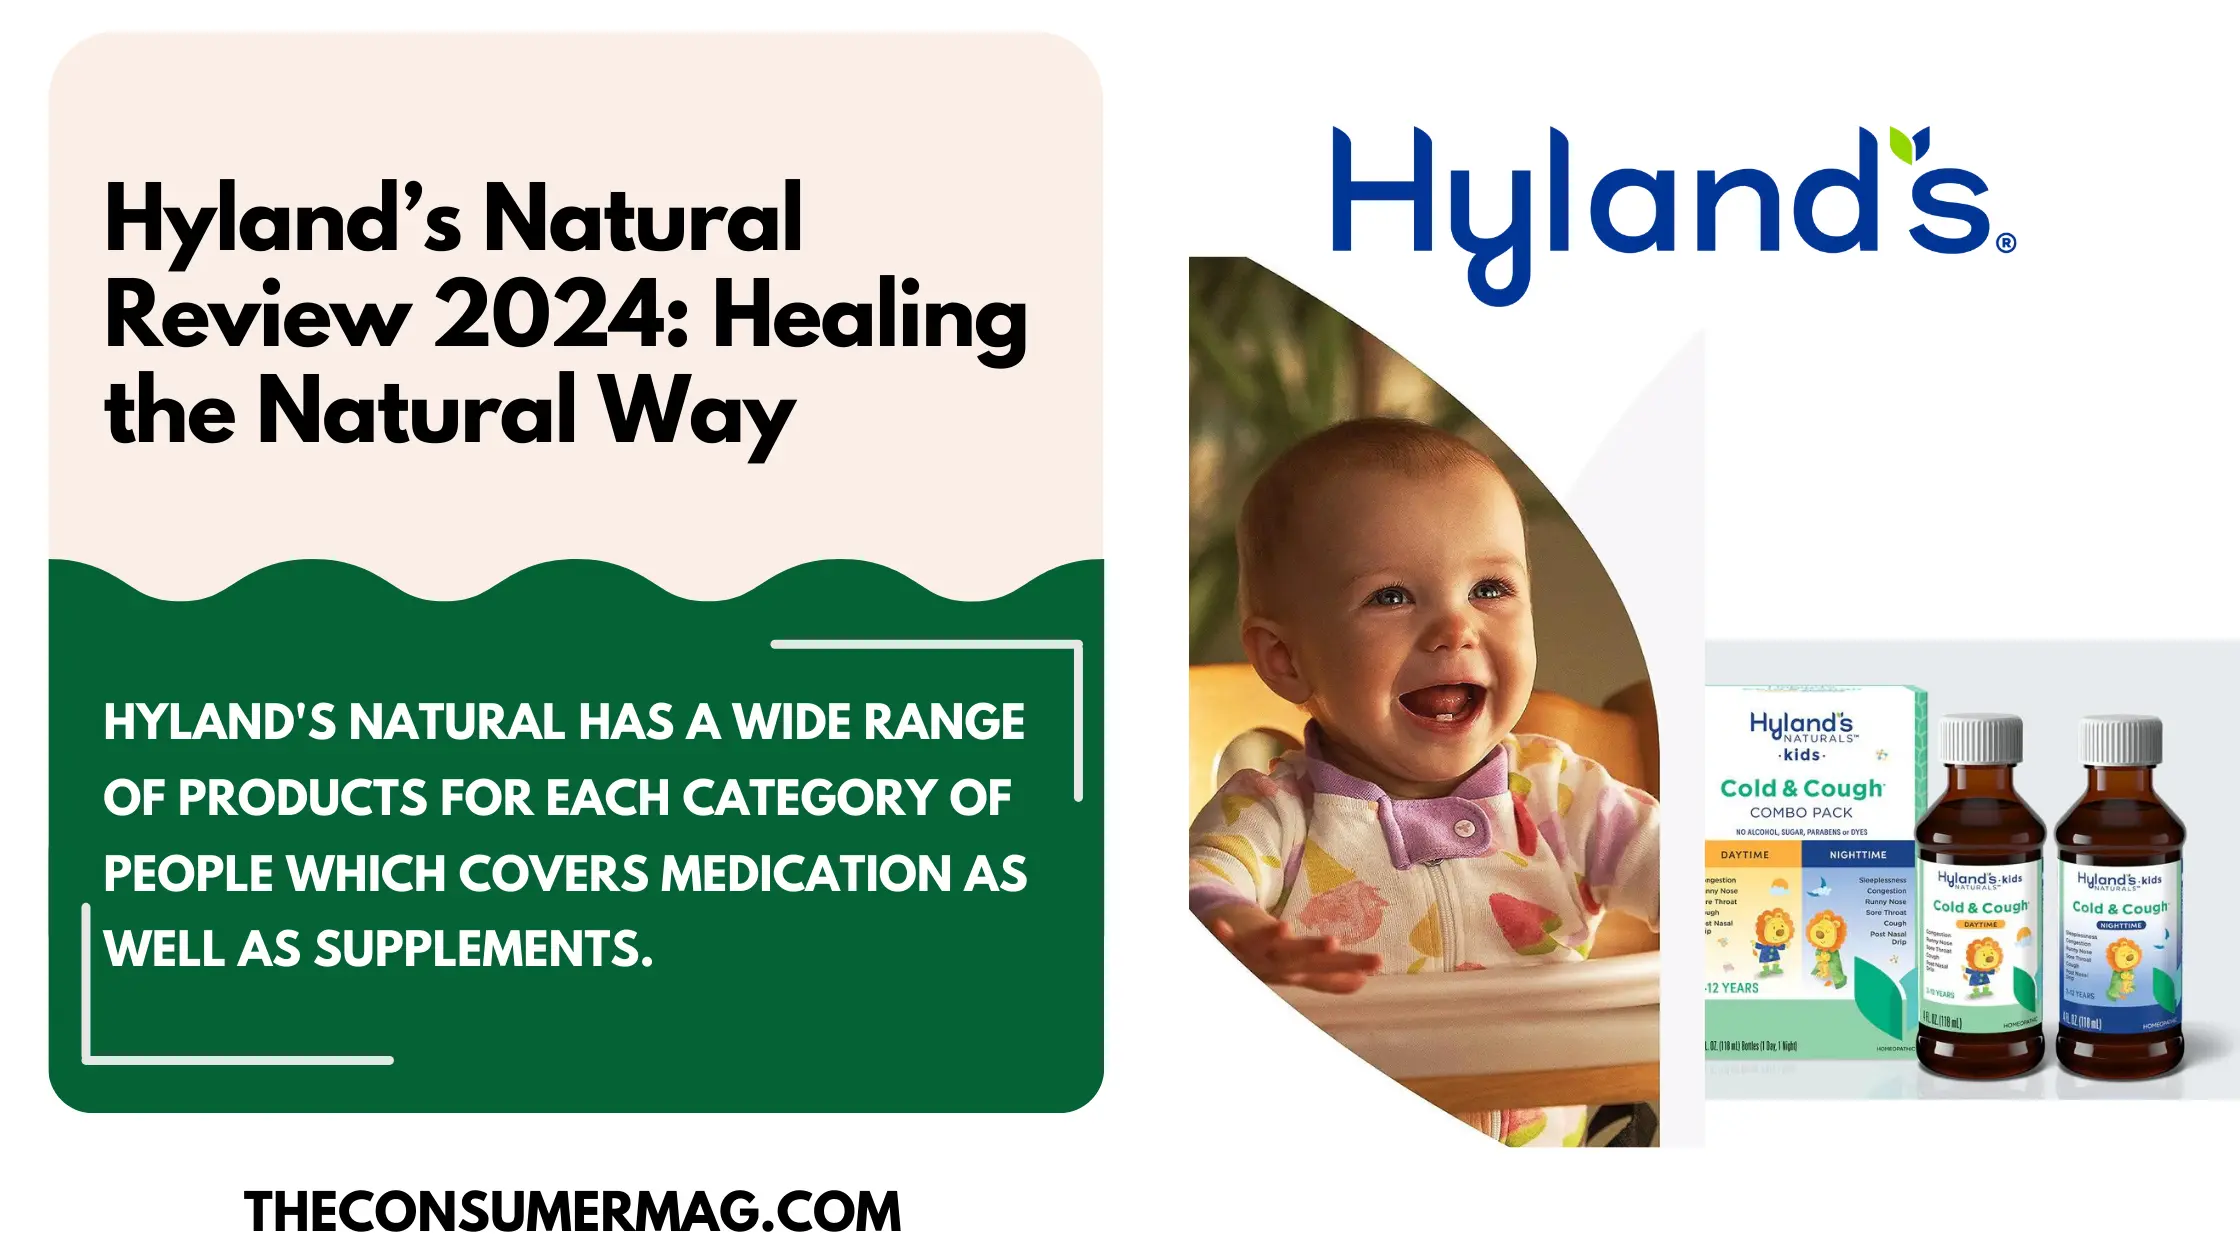 Hyland’s Natural Review 2024: Healing the Natural Way